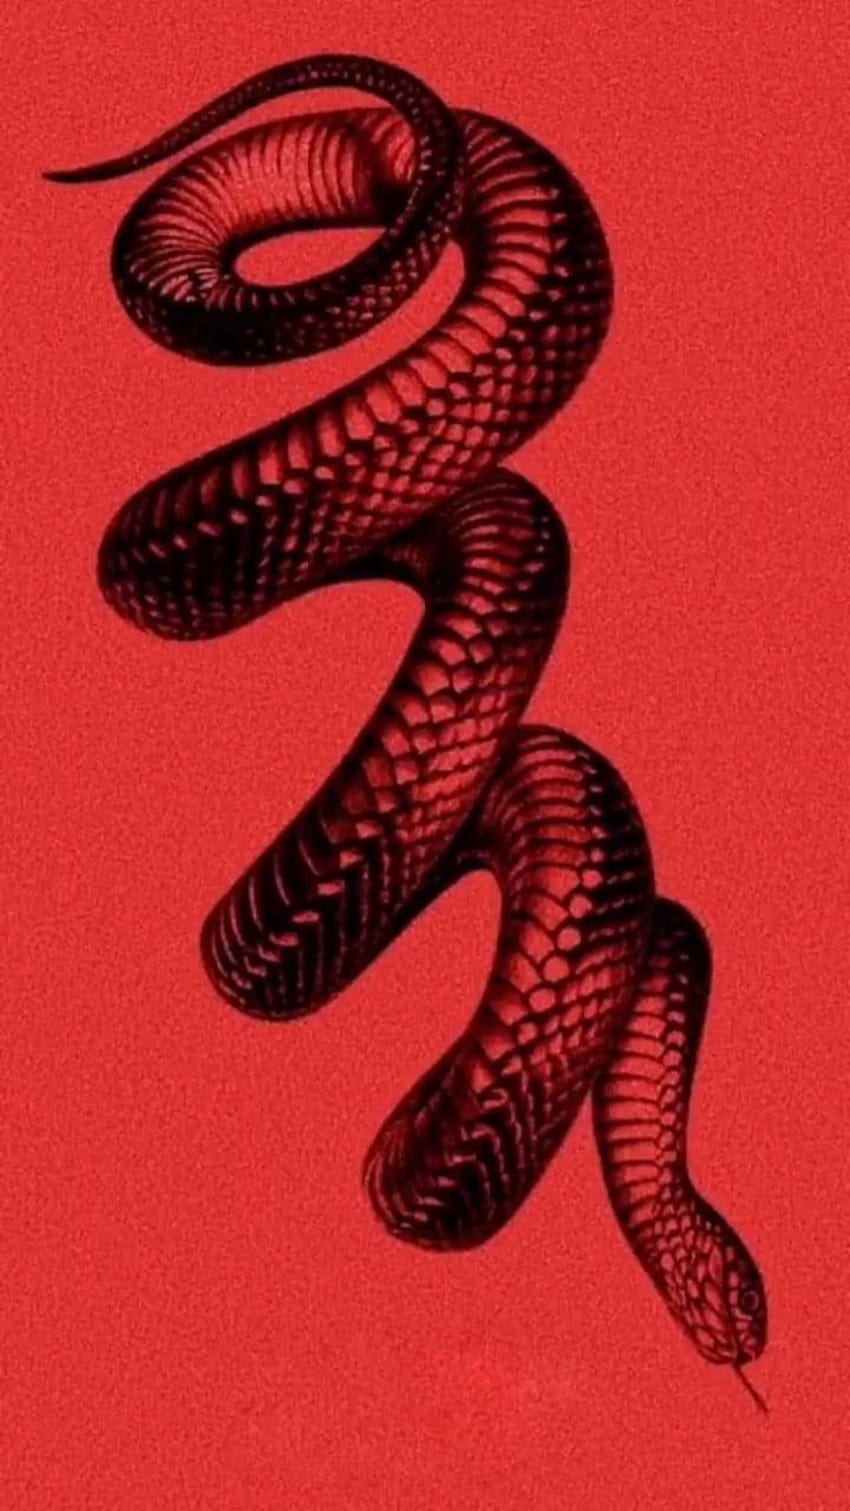 HD Snake Wallpapers Free Download - PixelsTalk.Net